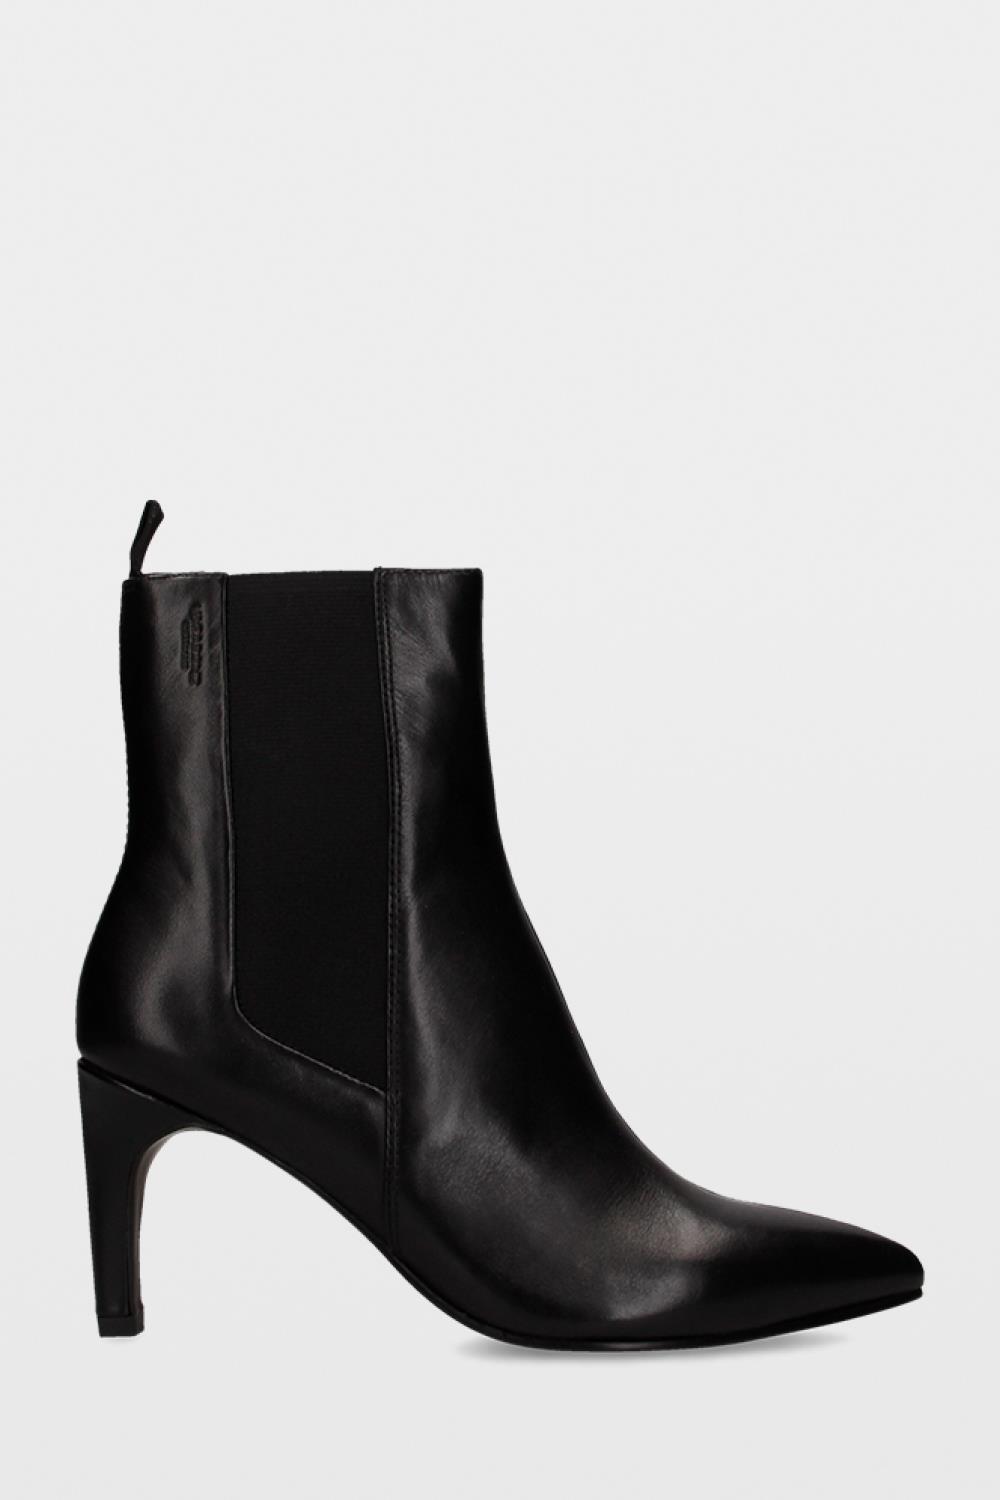 Zara Botas de tobillo negro Detalle remachado Zapatos Botas Botas de tobillo 